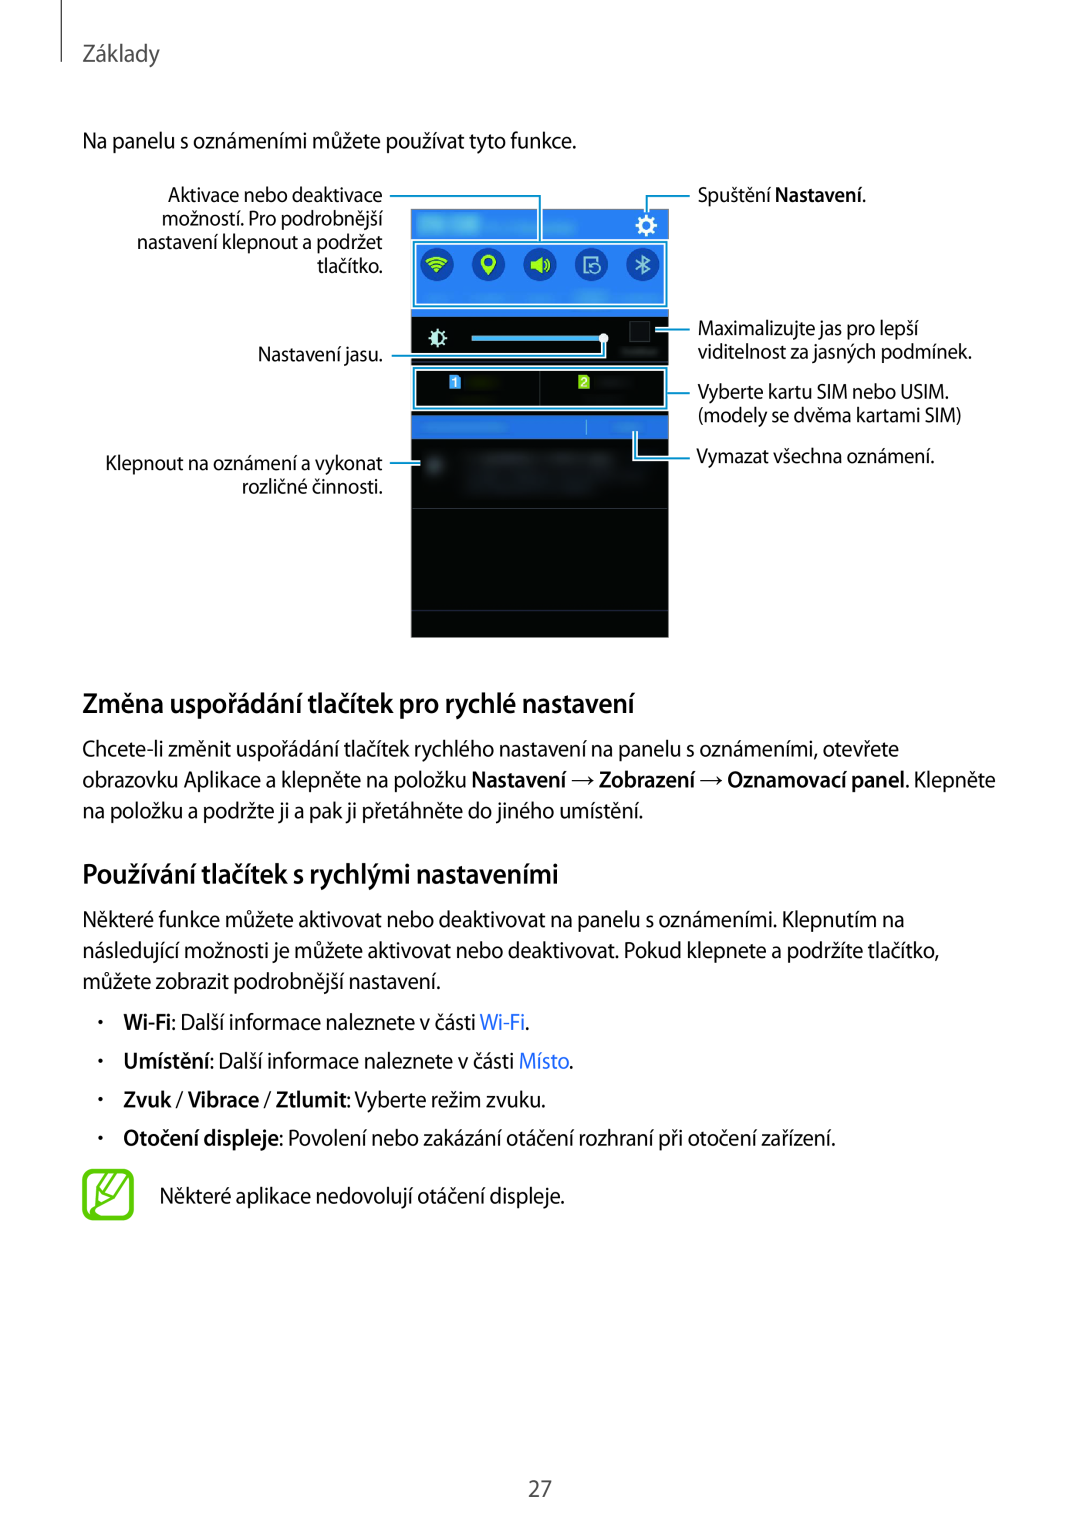 Samsung SM-J100HZWDETL Změna uspořádání tlačítek pro rychlé nastavení, Používání tlačítek s rychlými nastaveními, Základy 